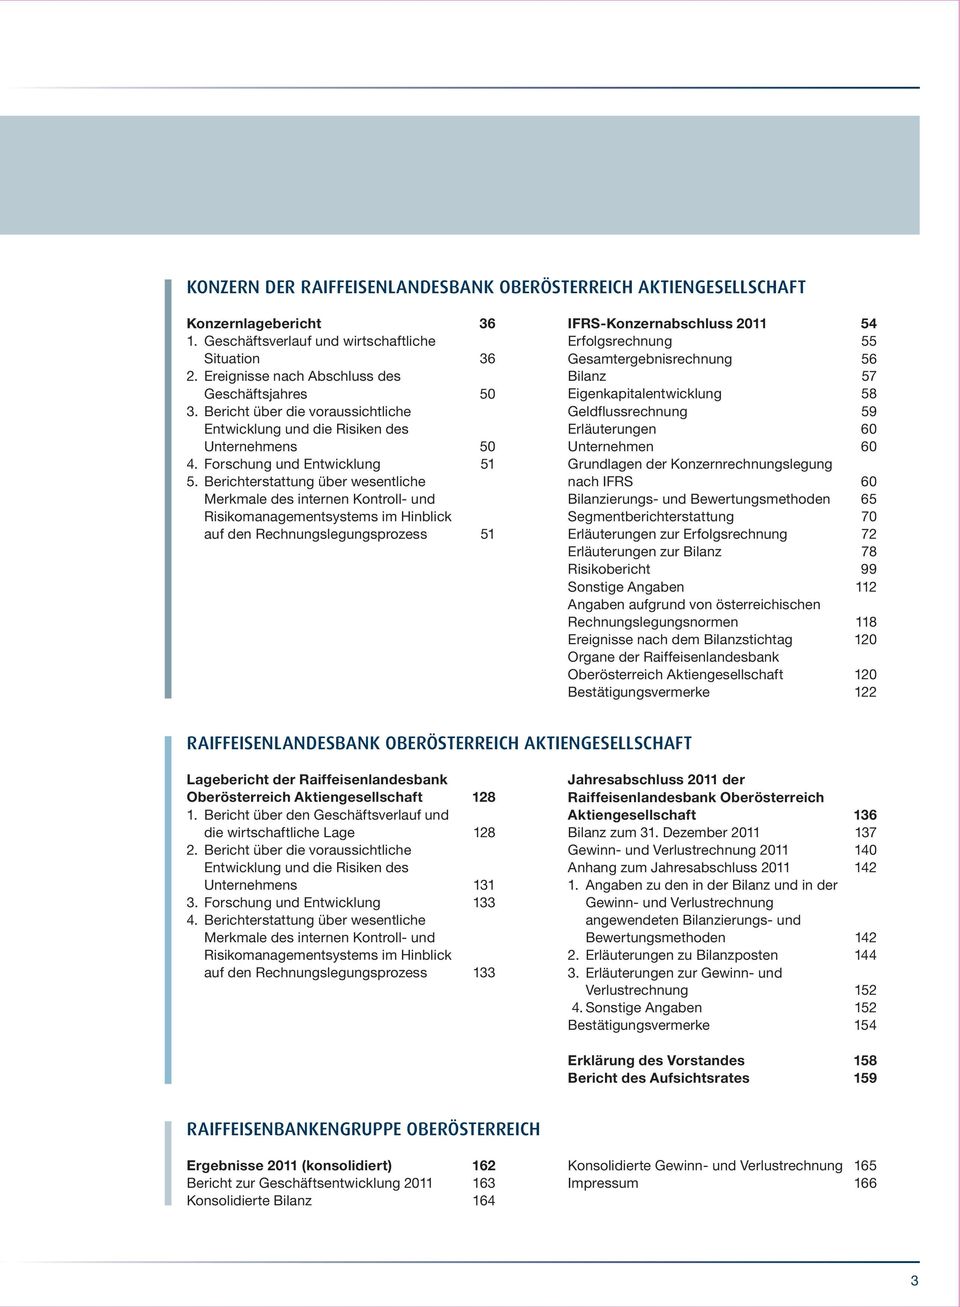 Berichterstattung über wesentliche Merkmale des internen Kontroll- und Risikomanagementsystems im Hinblick auf den Rechnungslegungsprozess 51 IFRS-Konzernabschluss 2011 54 Erfolgsrechnung 55